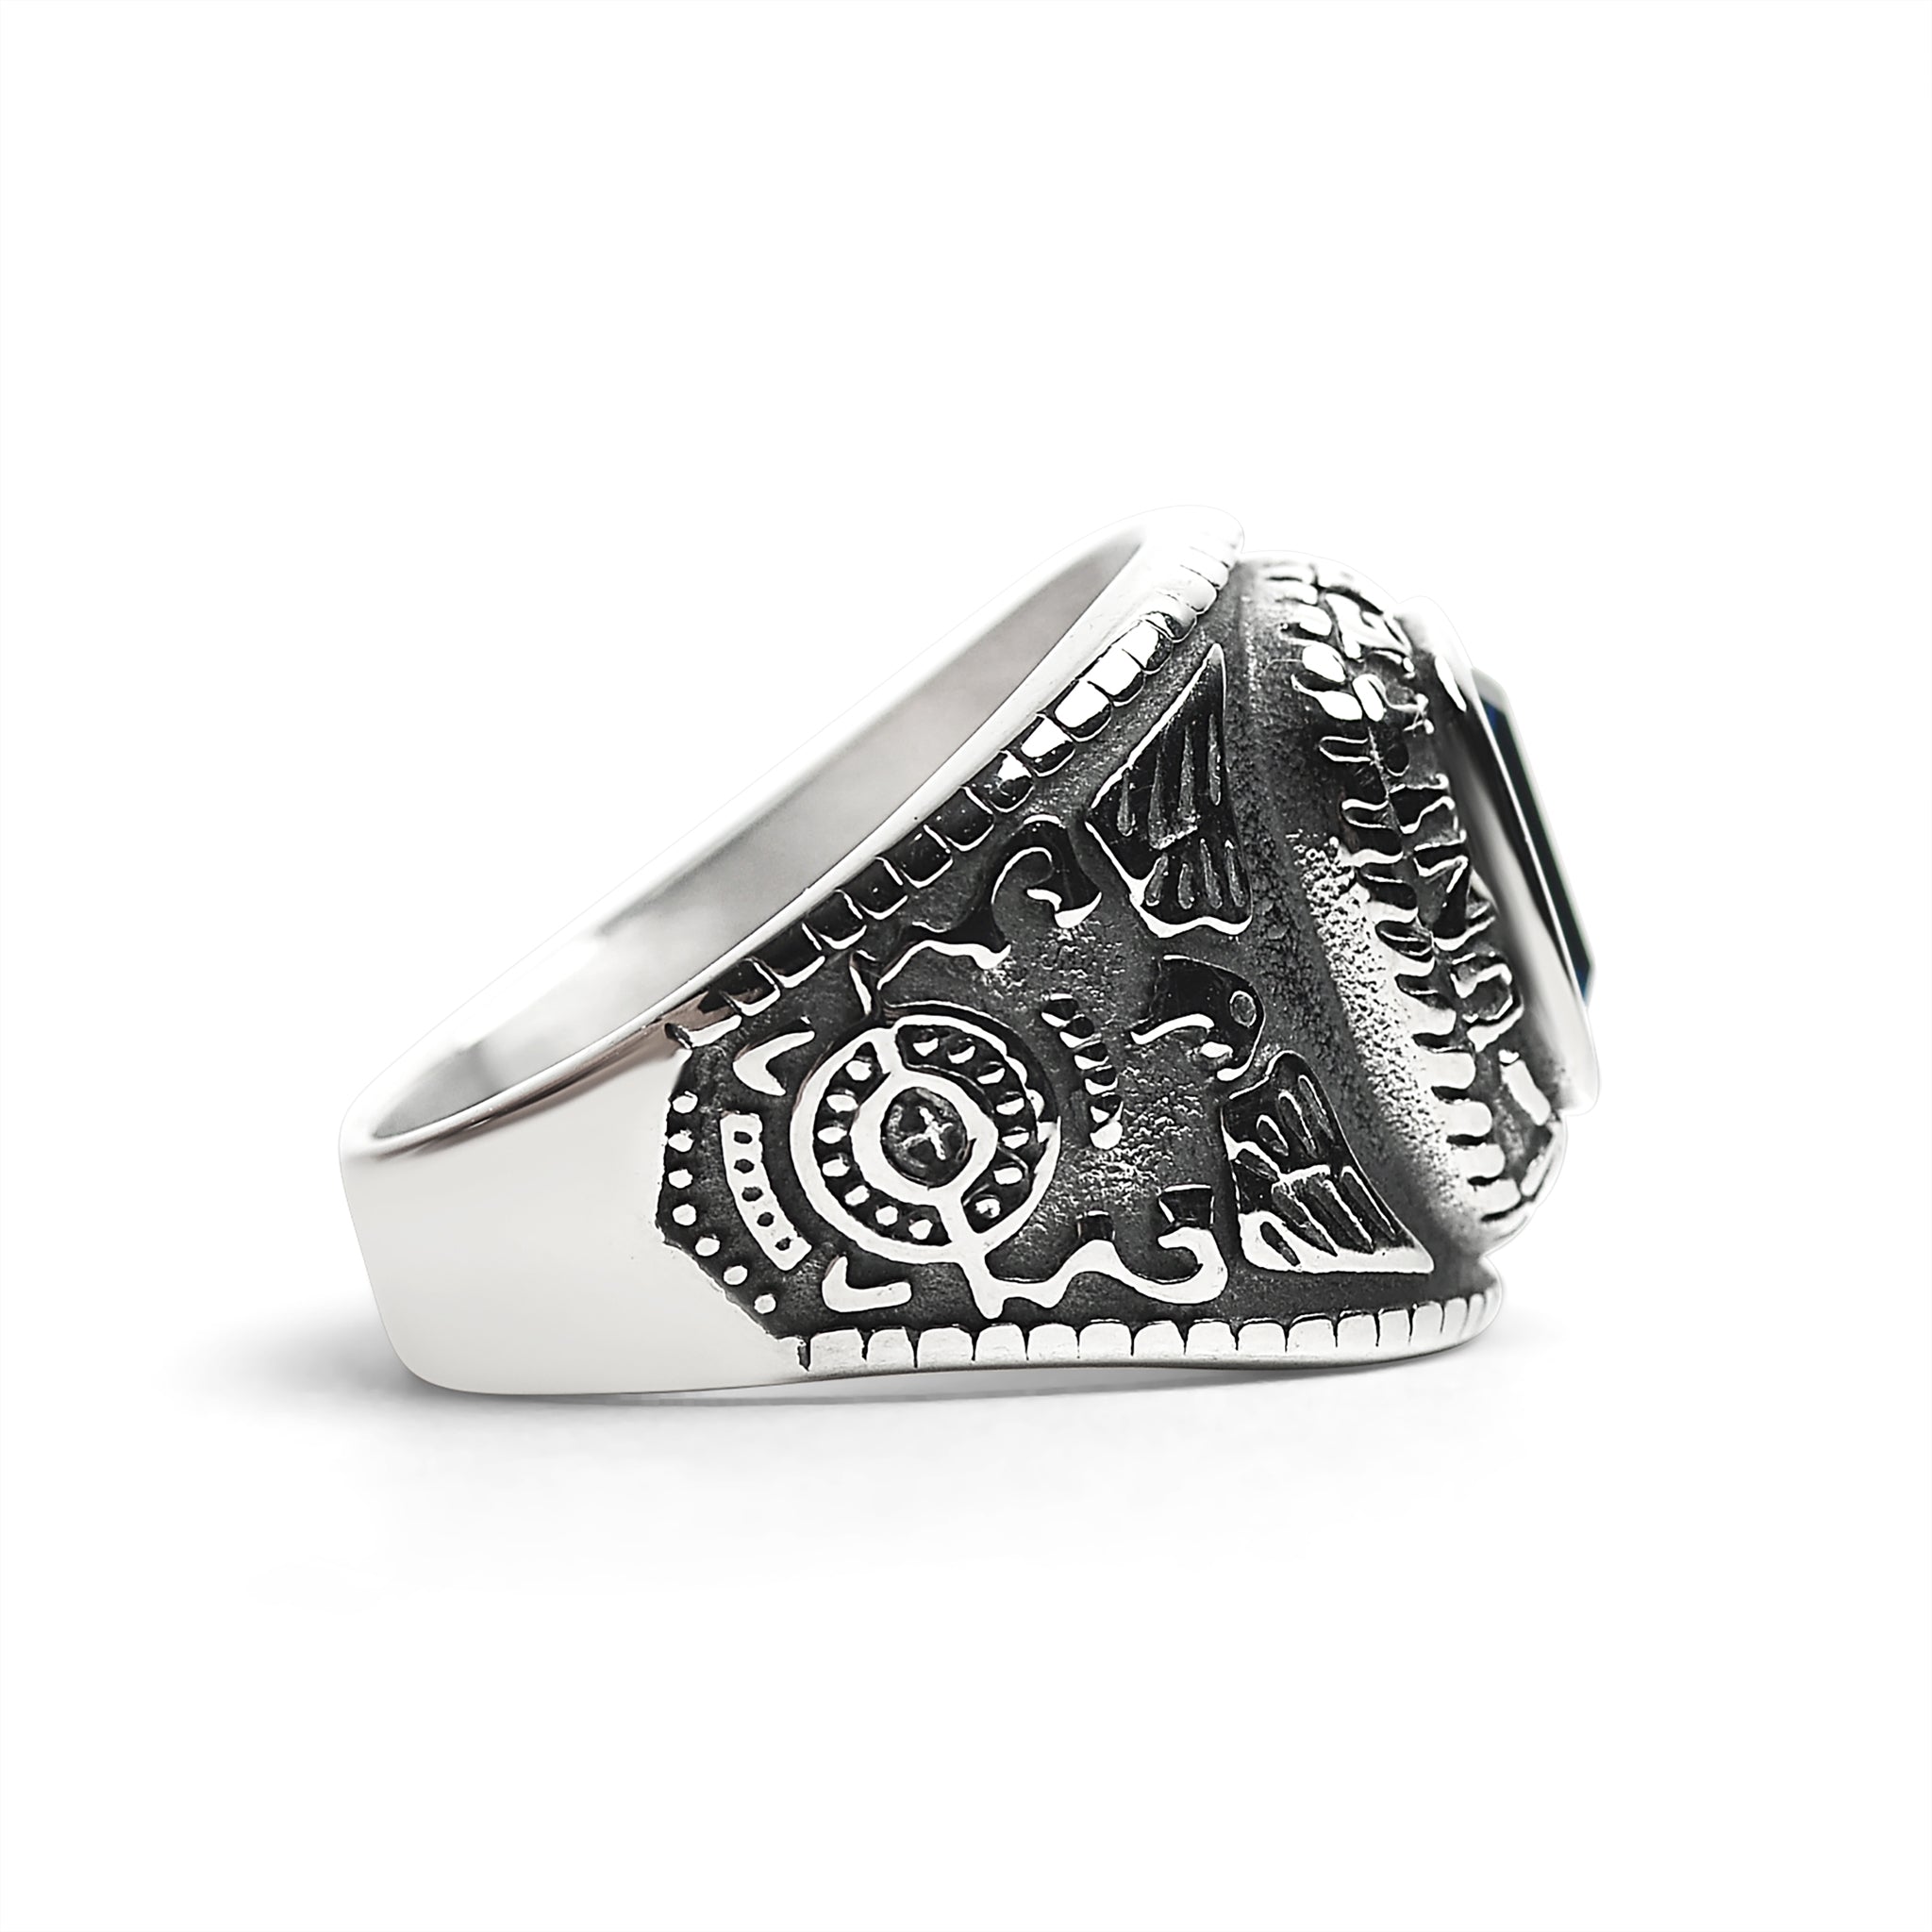 Rings - Buy 2250+ Ring Designs Online in India 2020 | BlueStone.com | Mens  rings online, Mens ring designs, Mens gold rings